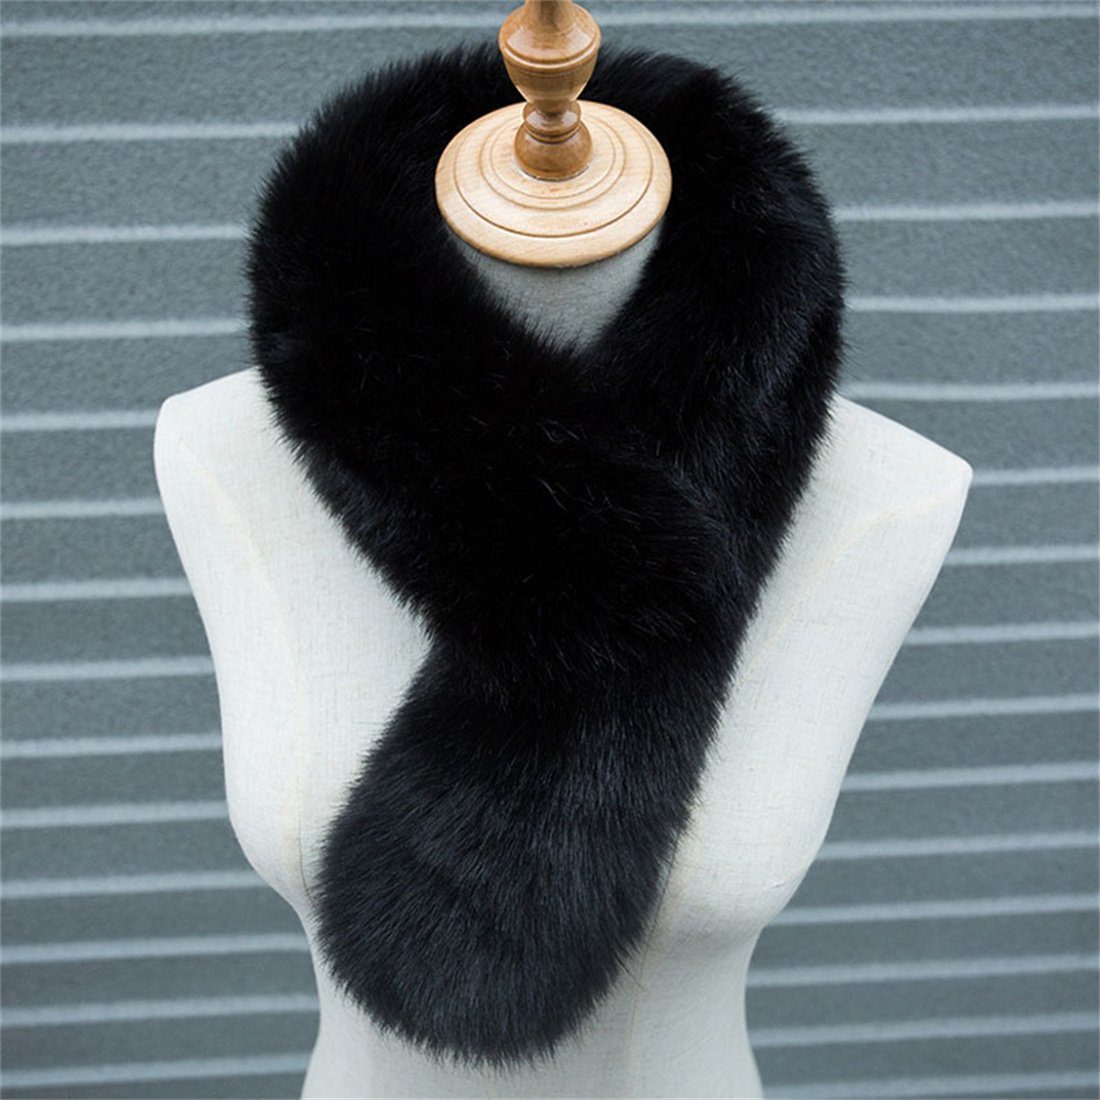 DÖRÖY Modeschal Damen Winter einfarbigSchal warm Pelz verdickt Schal,Nachahmung Plüsch